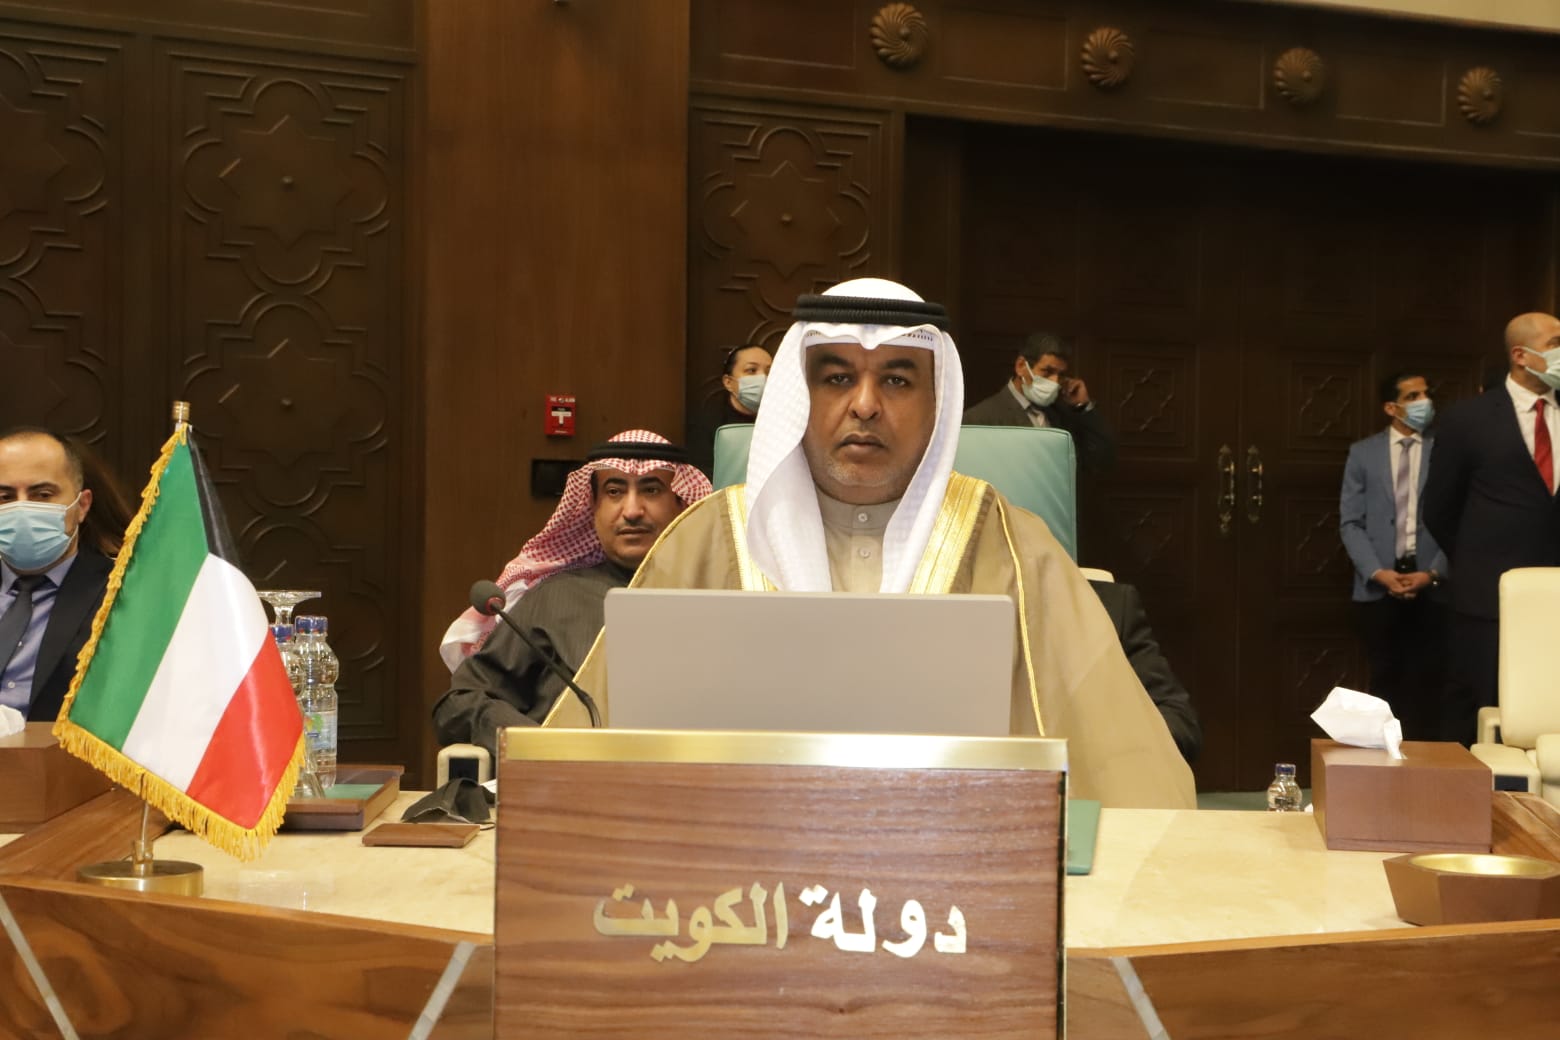 وكيل وزارة المالية الكويتية المساعد للشؤون الاقتصادية بالتكليف طلال النمش